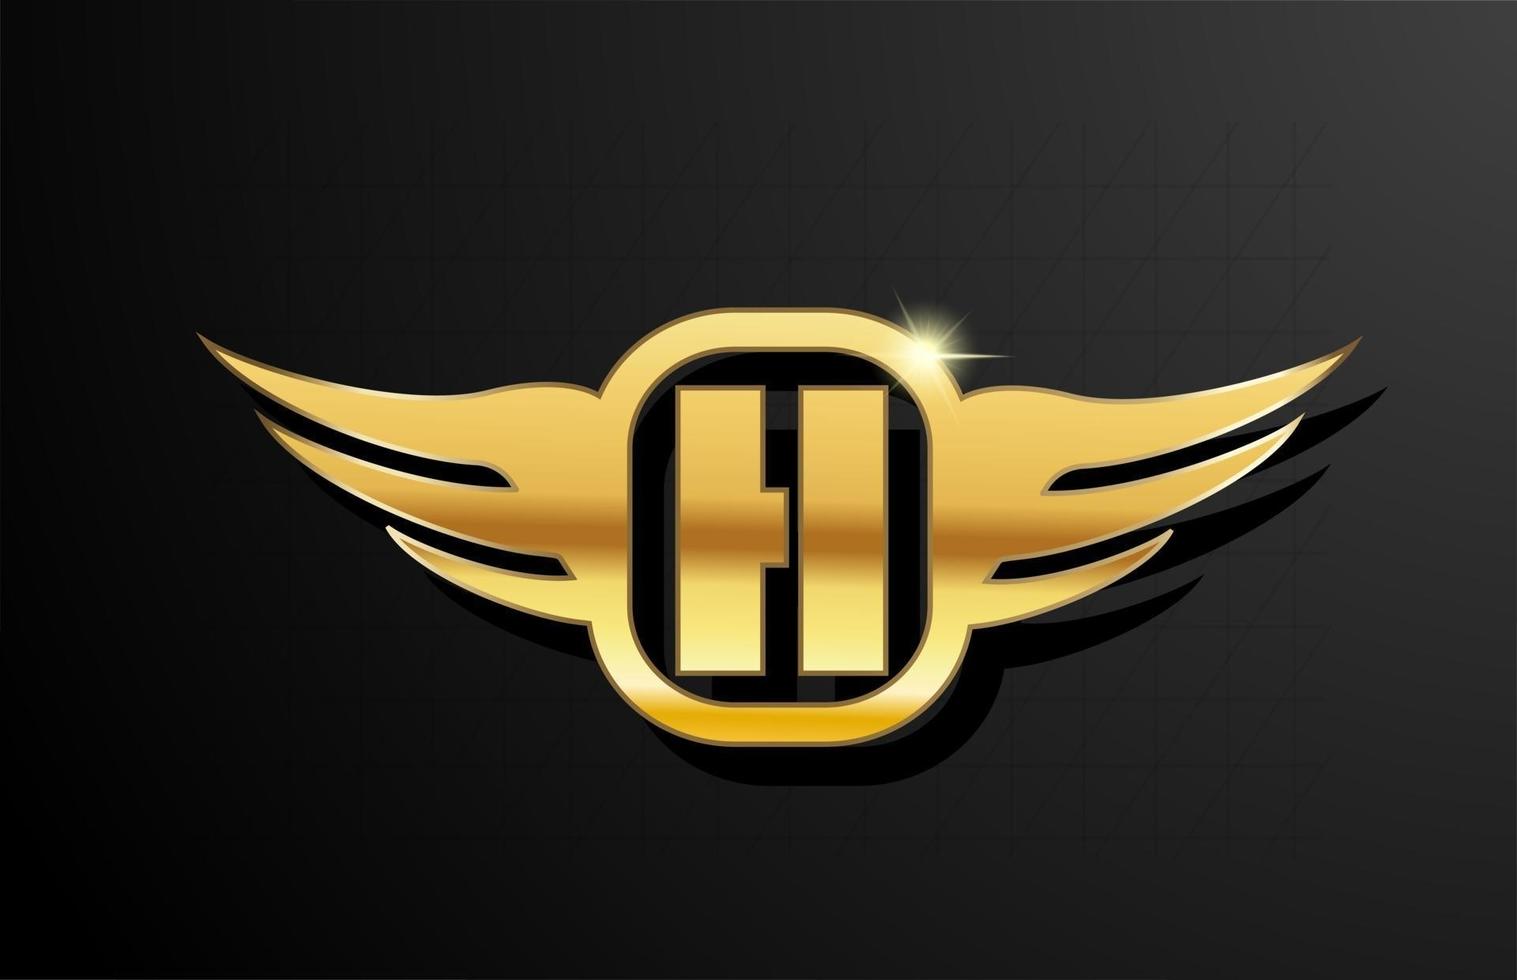 h alfabeto logotipo de letra dourada para negócios e empresa com a cor amarela. brading e letras corporativas com design e asa em metal dourado vetor